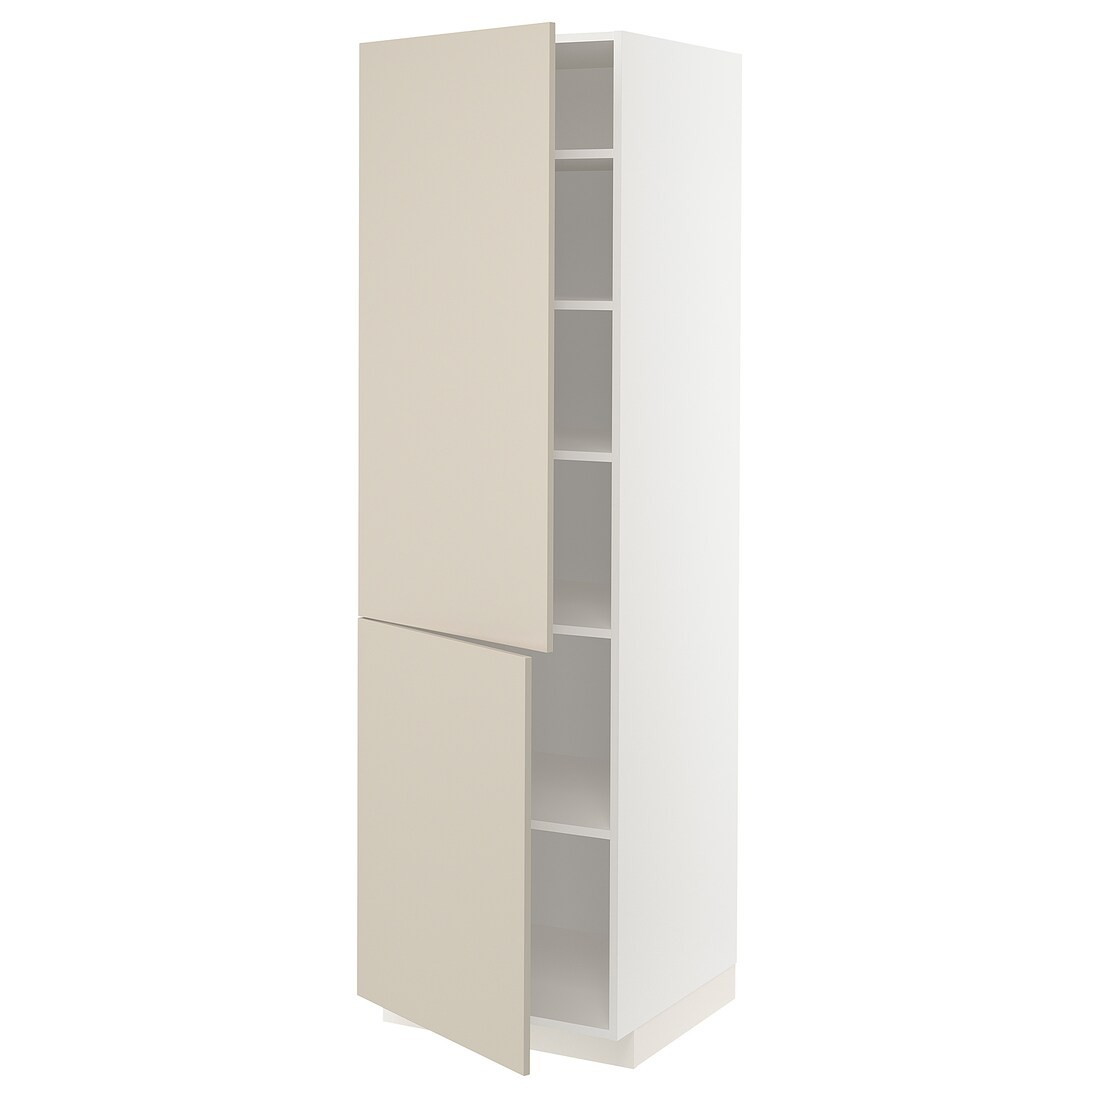 IKEA METOD МЕТОД Висока шафа з полицями / 2 дверцят, білий / Havstorp бежевий, 60x60x200 см 79465299 794.652.99